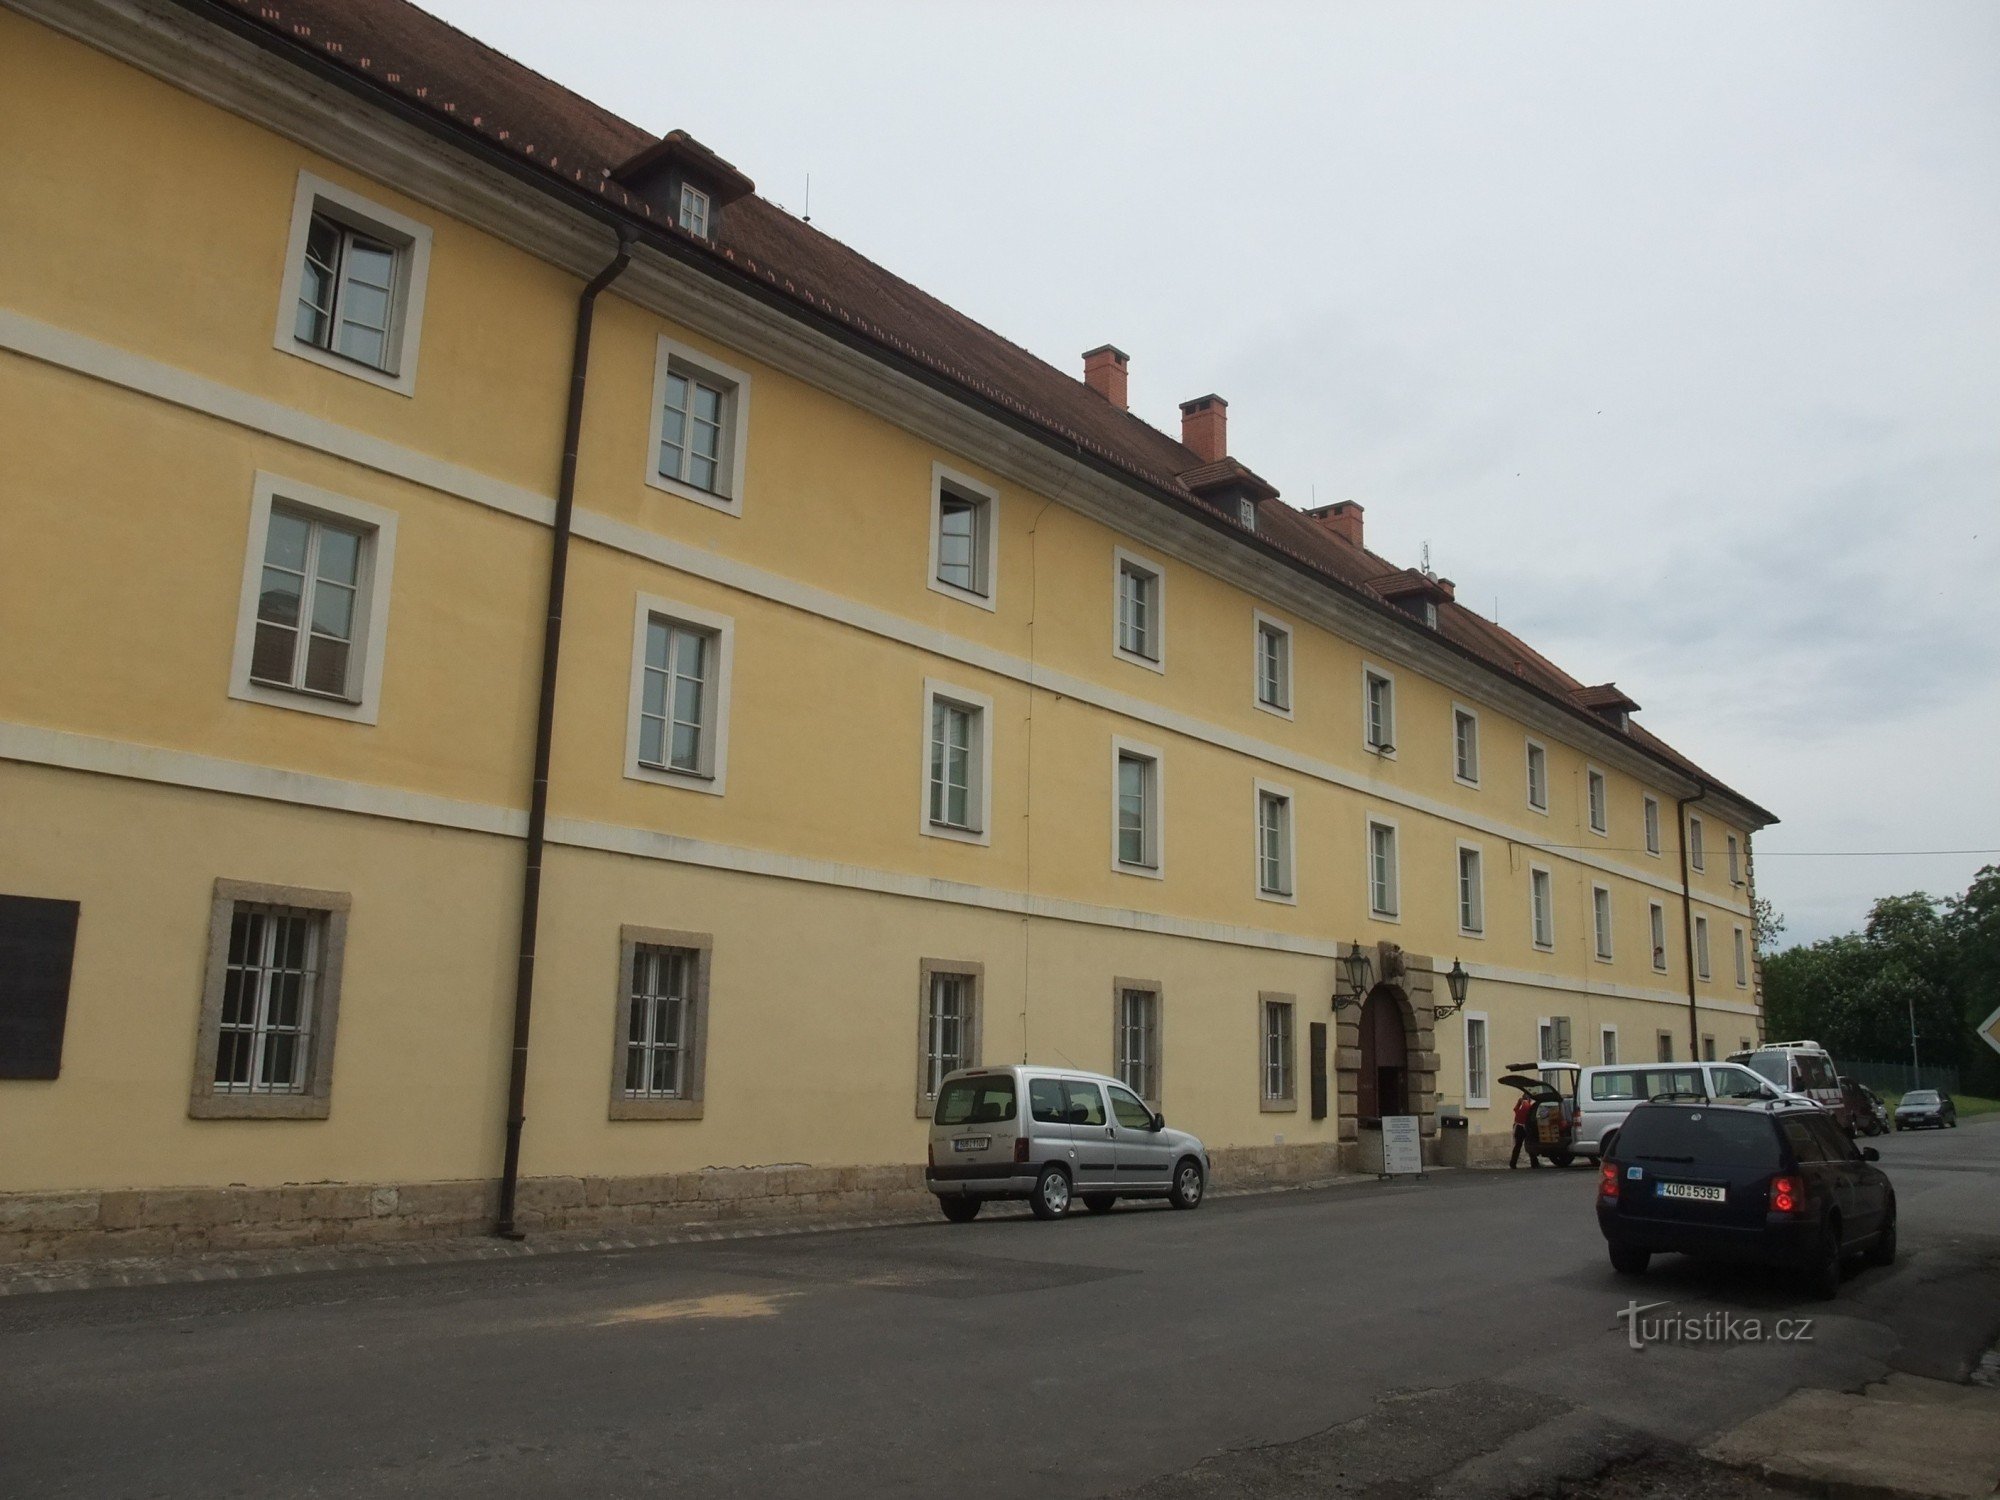 Культурная жизнь в Терезинском гетто - Магдебургские казармы